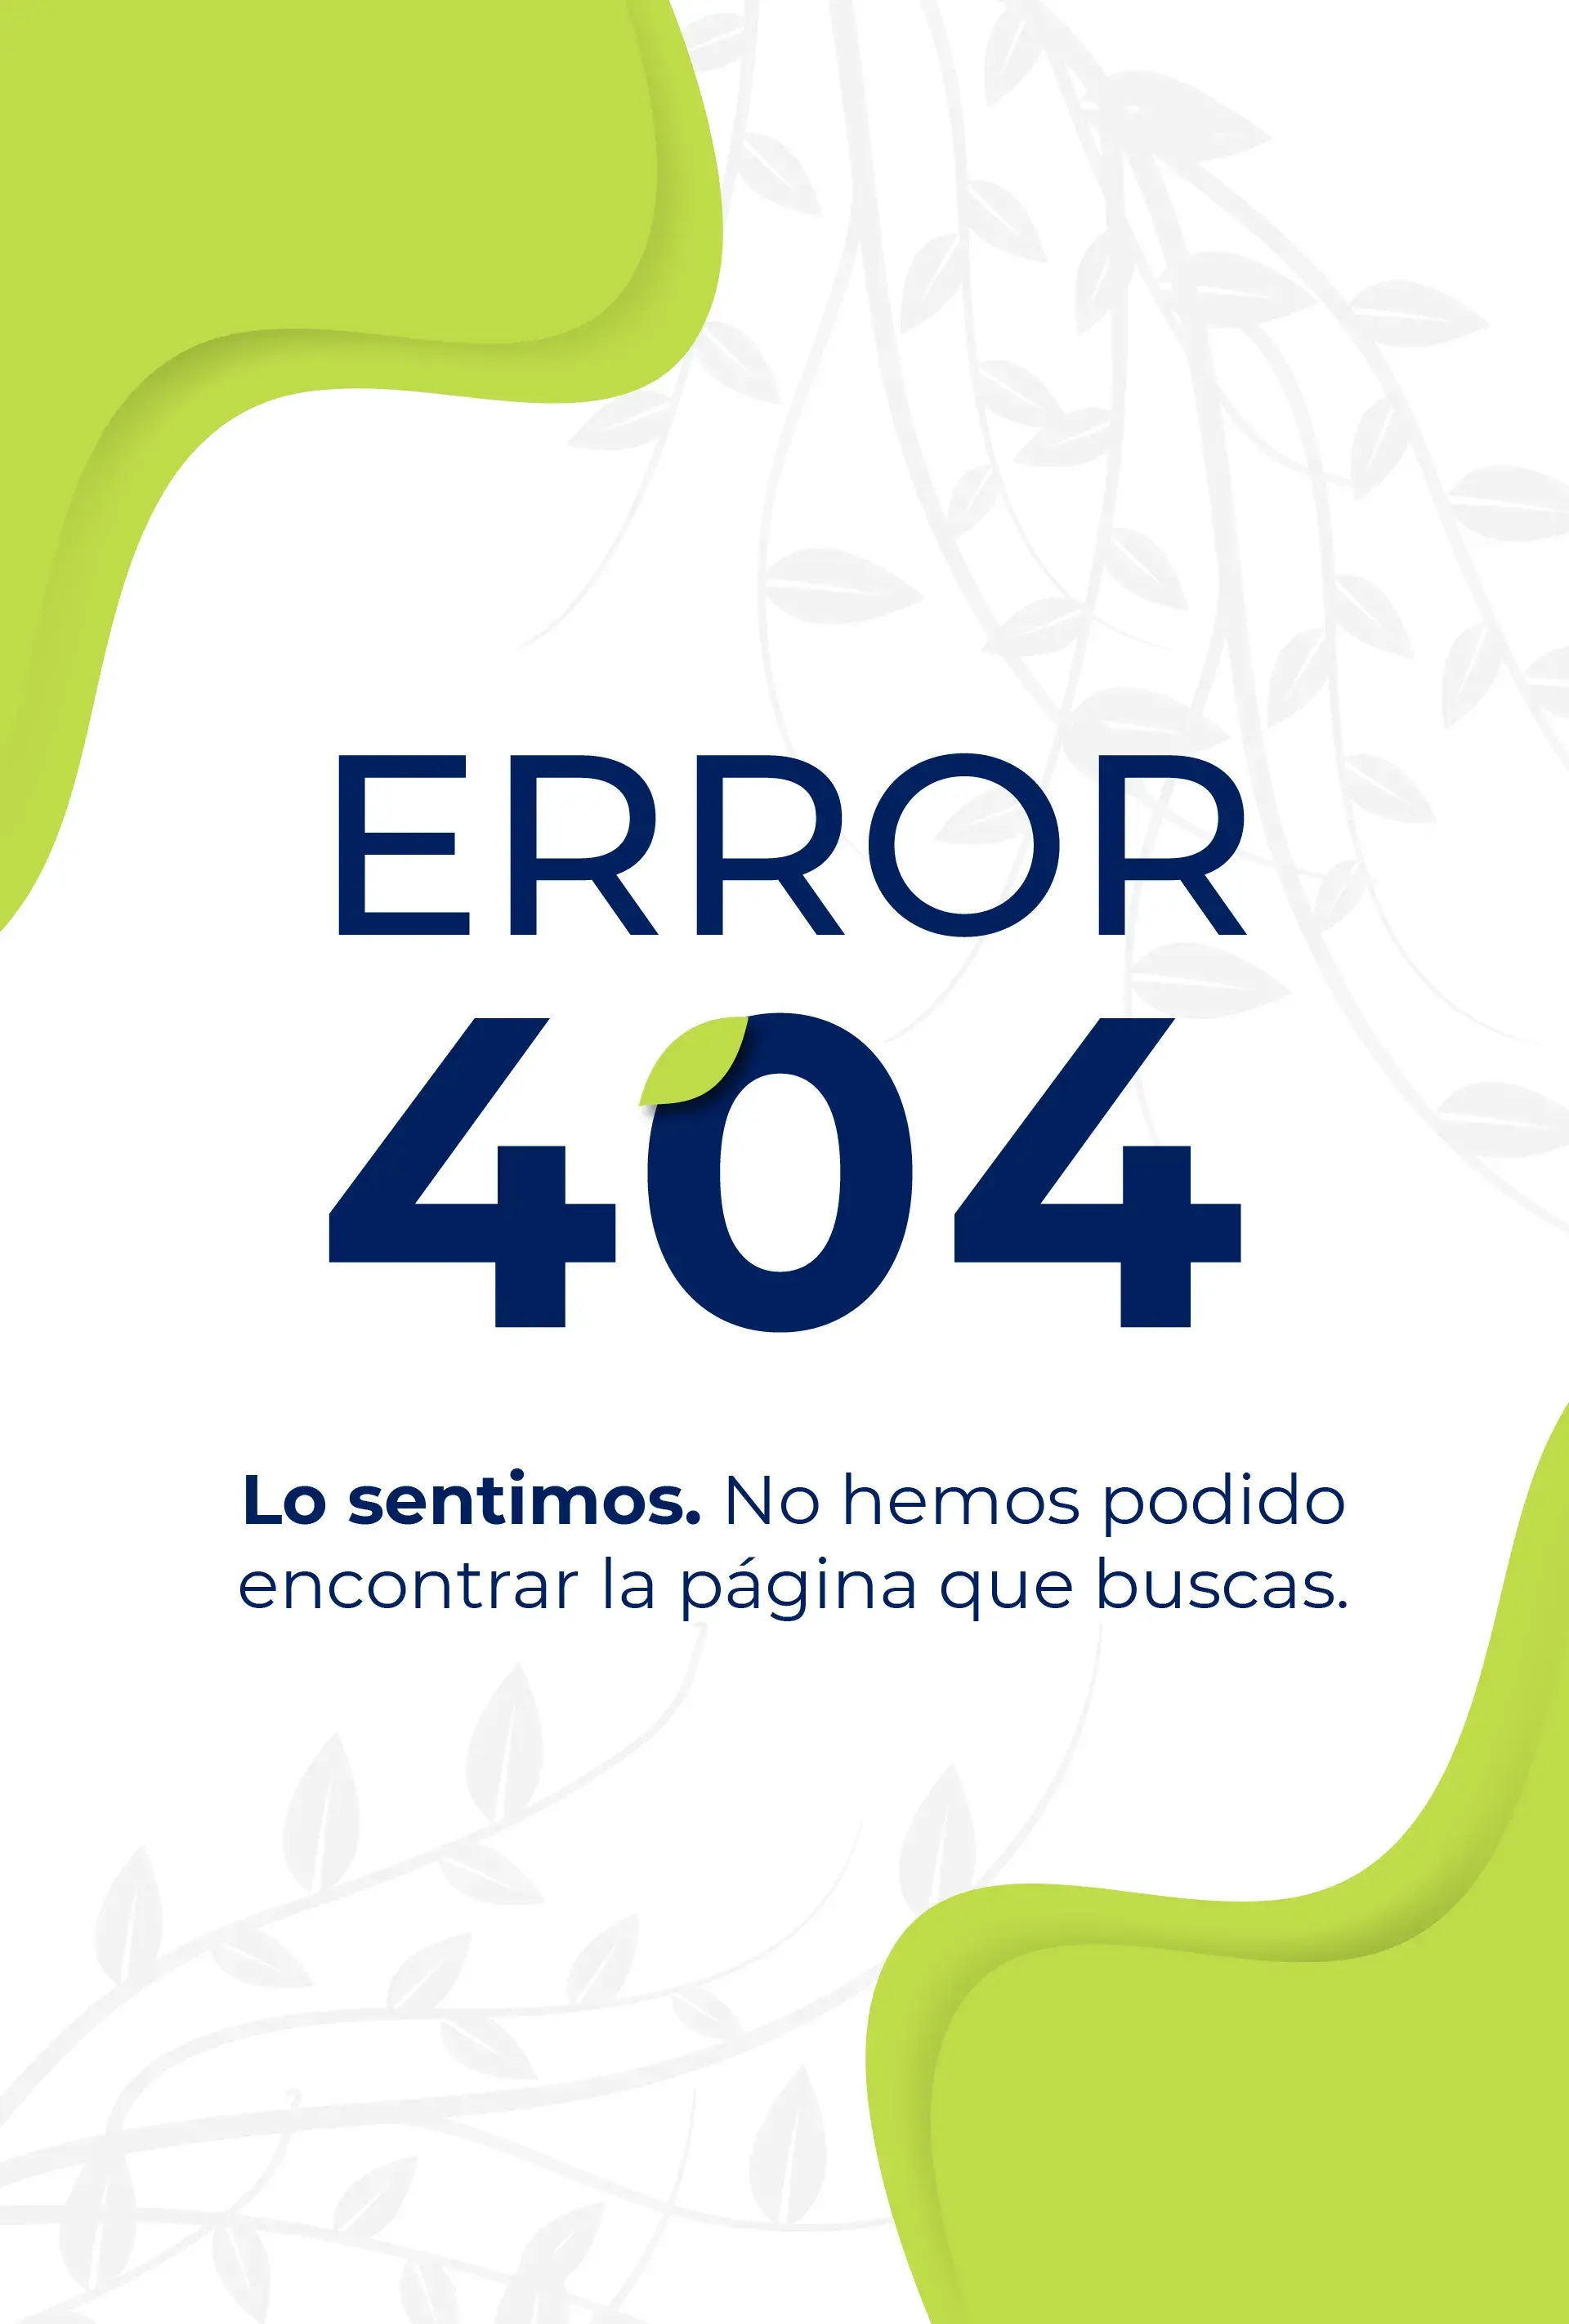 Error 404. Lo sentimos, no hemos podido encontrar la página que buscas.